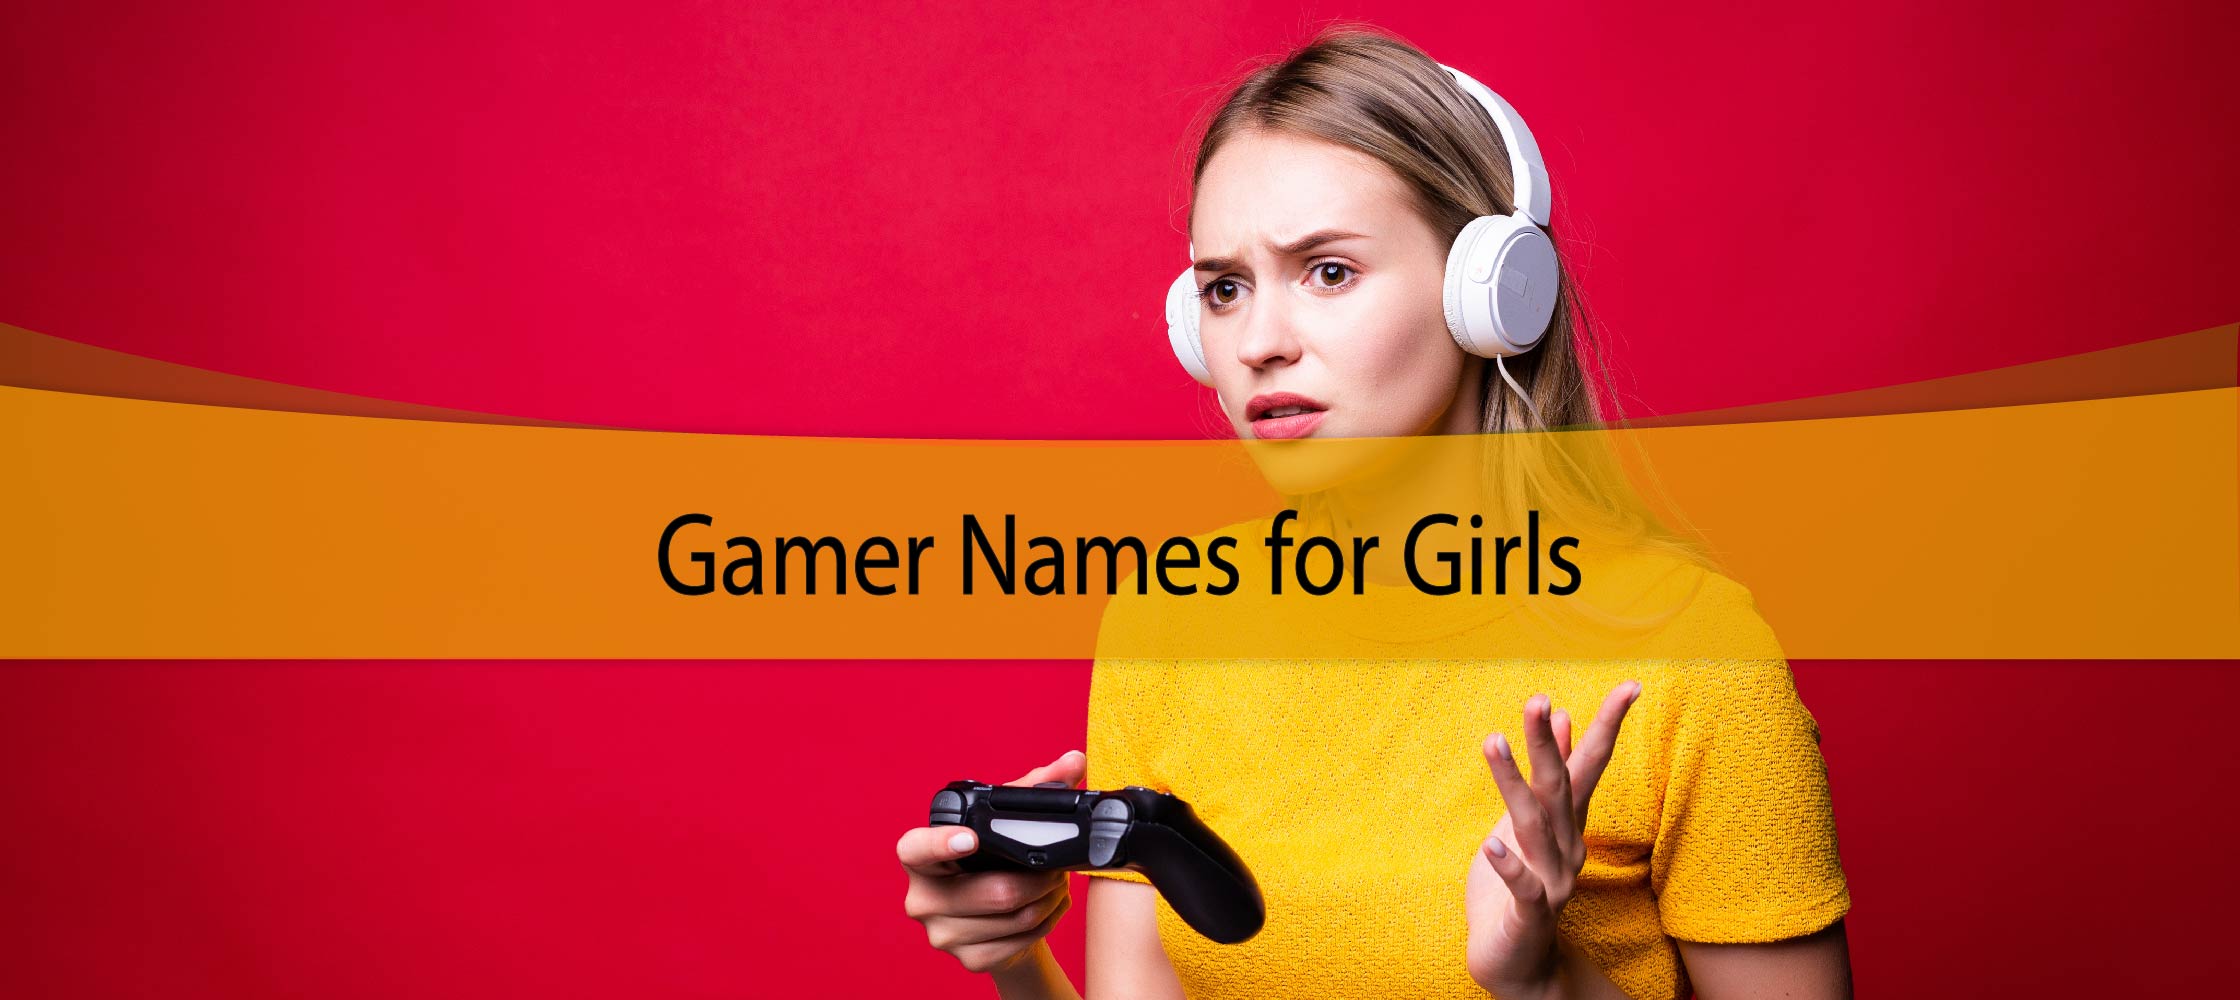 Gamer Names for Girls